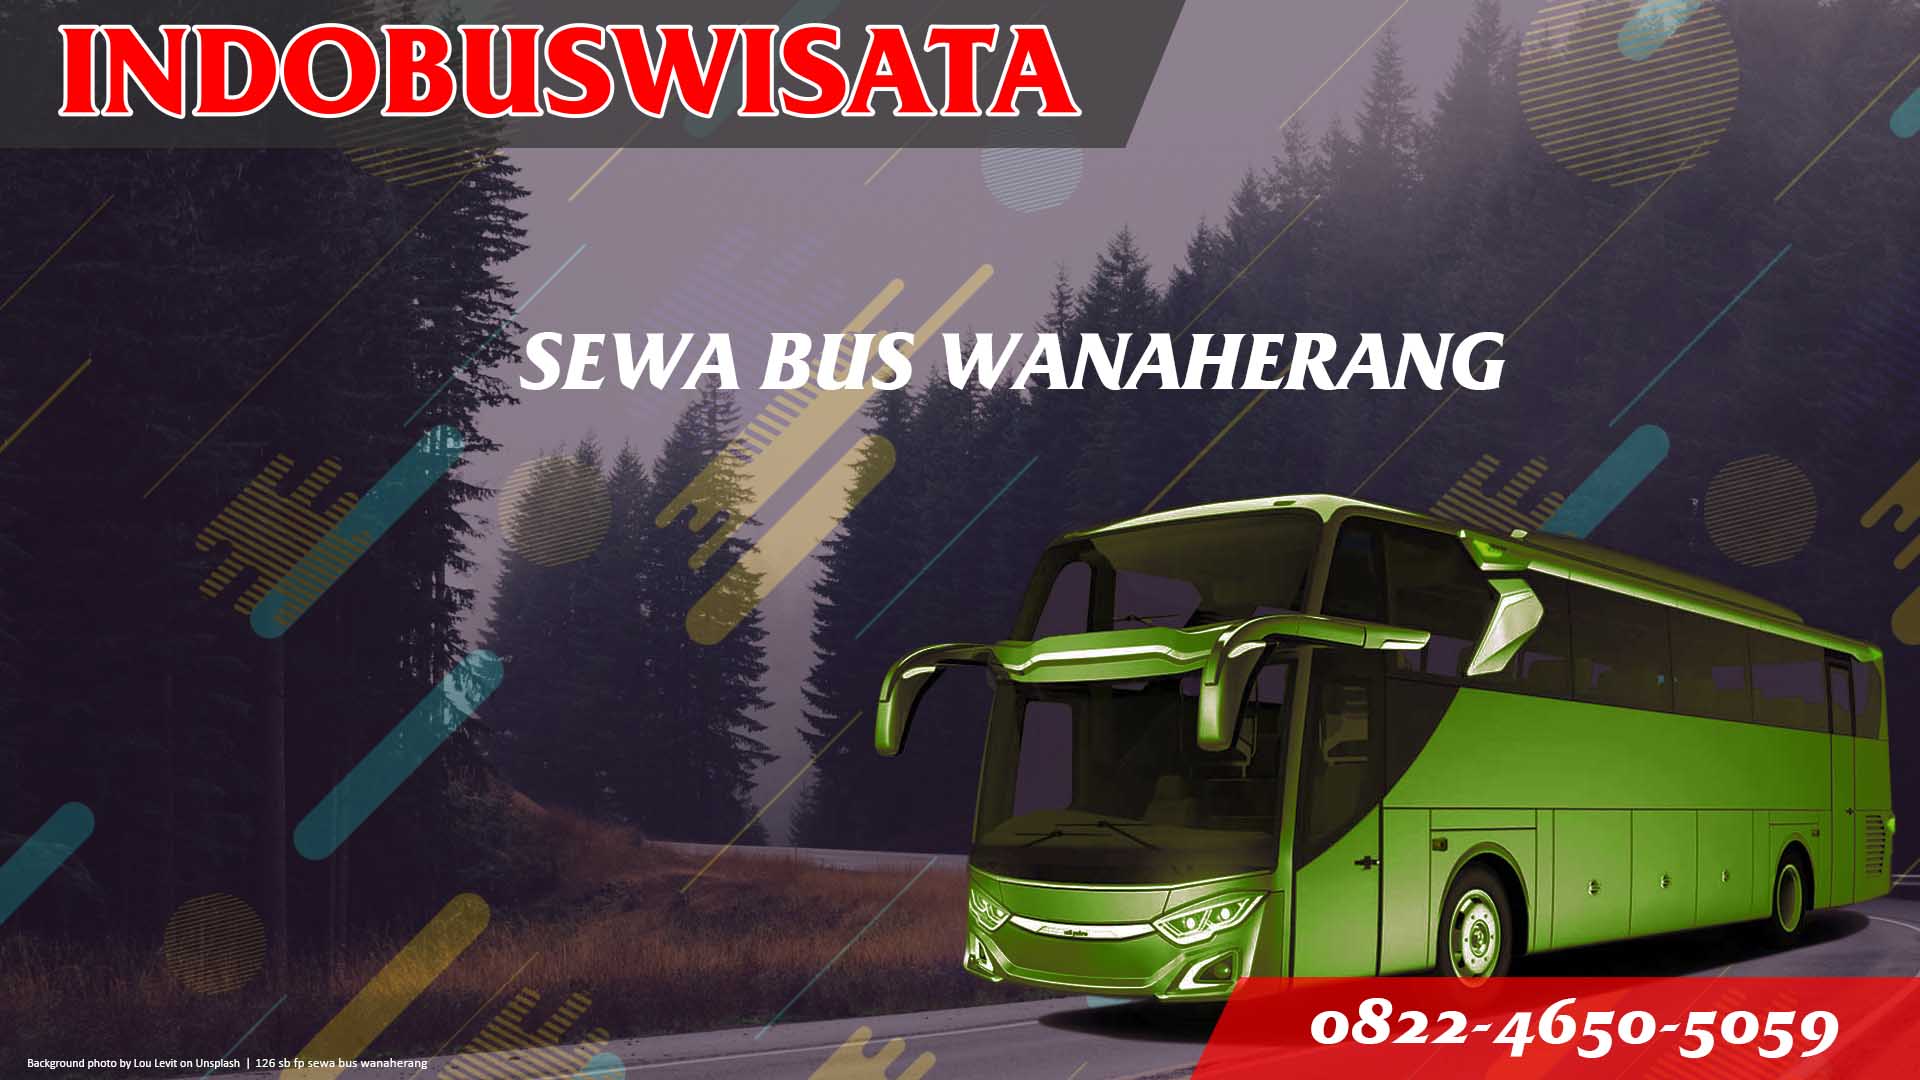 126 Sb Fp Sewa Bus Wanaherang Jb 3 Hdd Indobuswisata